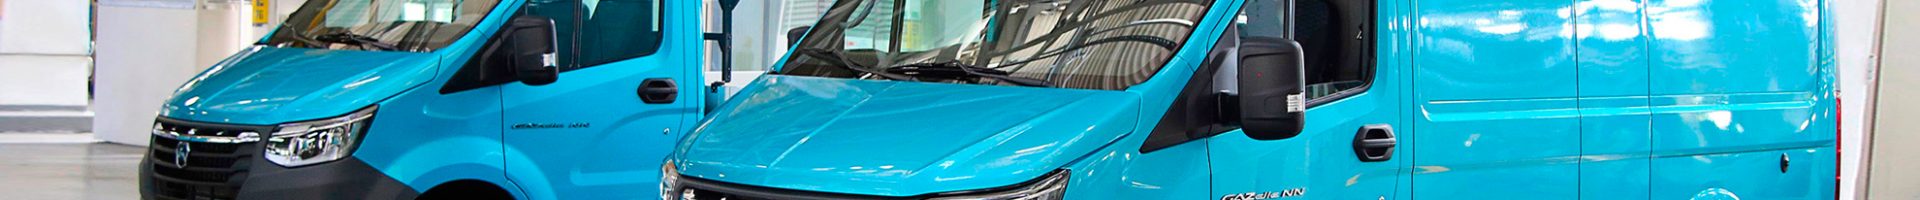 «Группа ГАЗ» начала серийное производство автомобиля «ГАЗель NN»